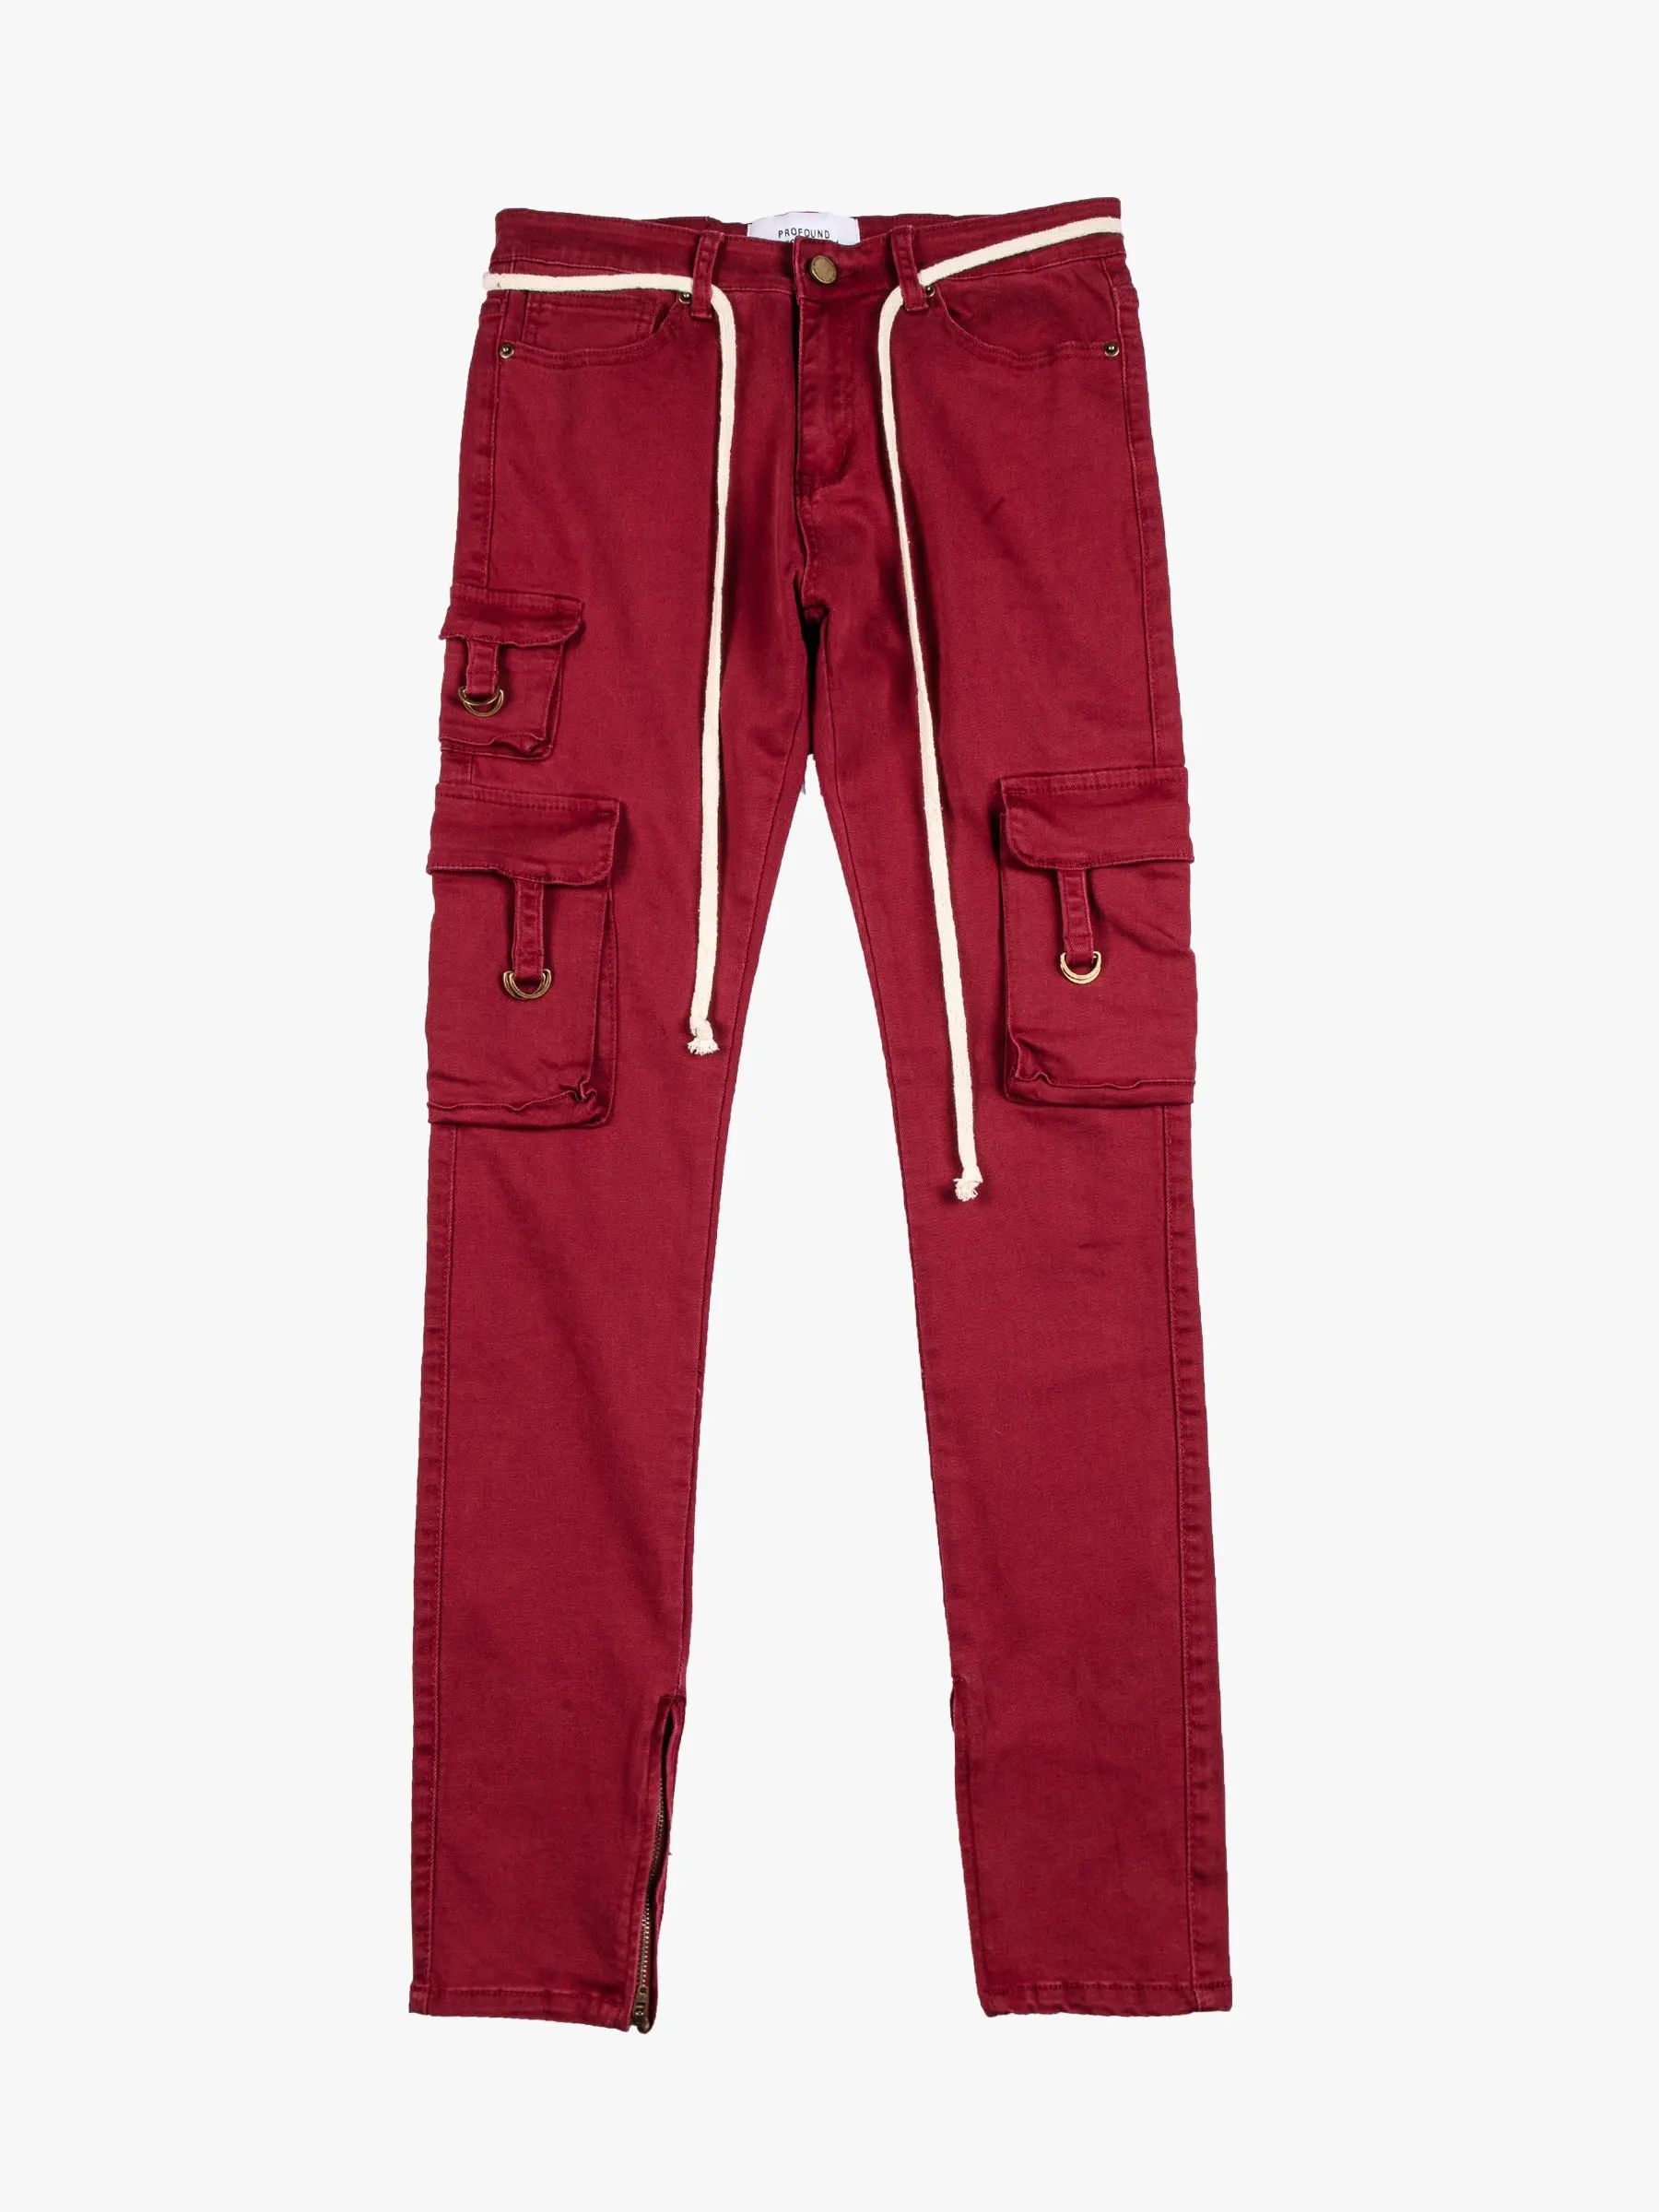 Diznew Best Seller Brand Red Cargo Pants For Work Men - Buy Mens Cargo ...